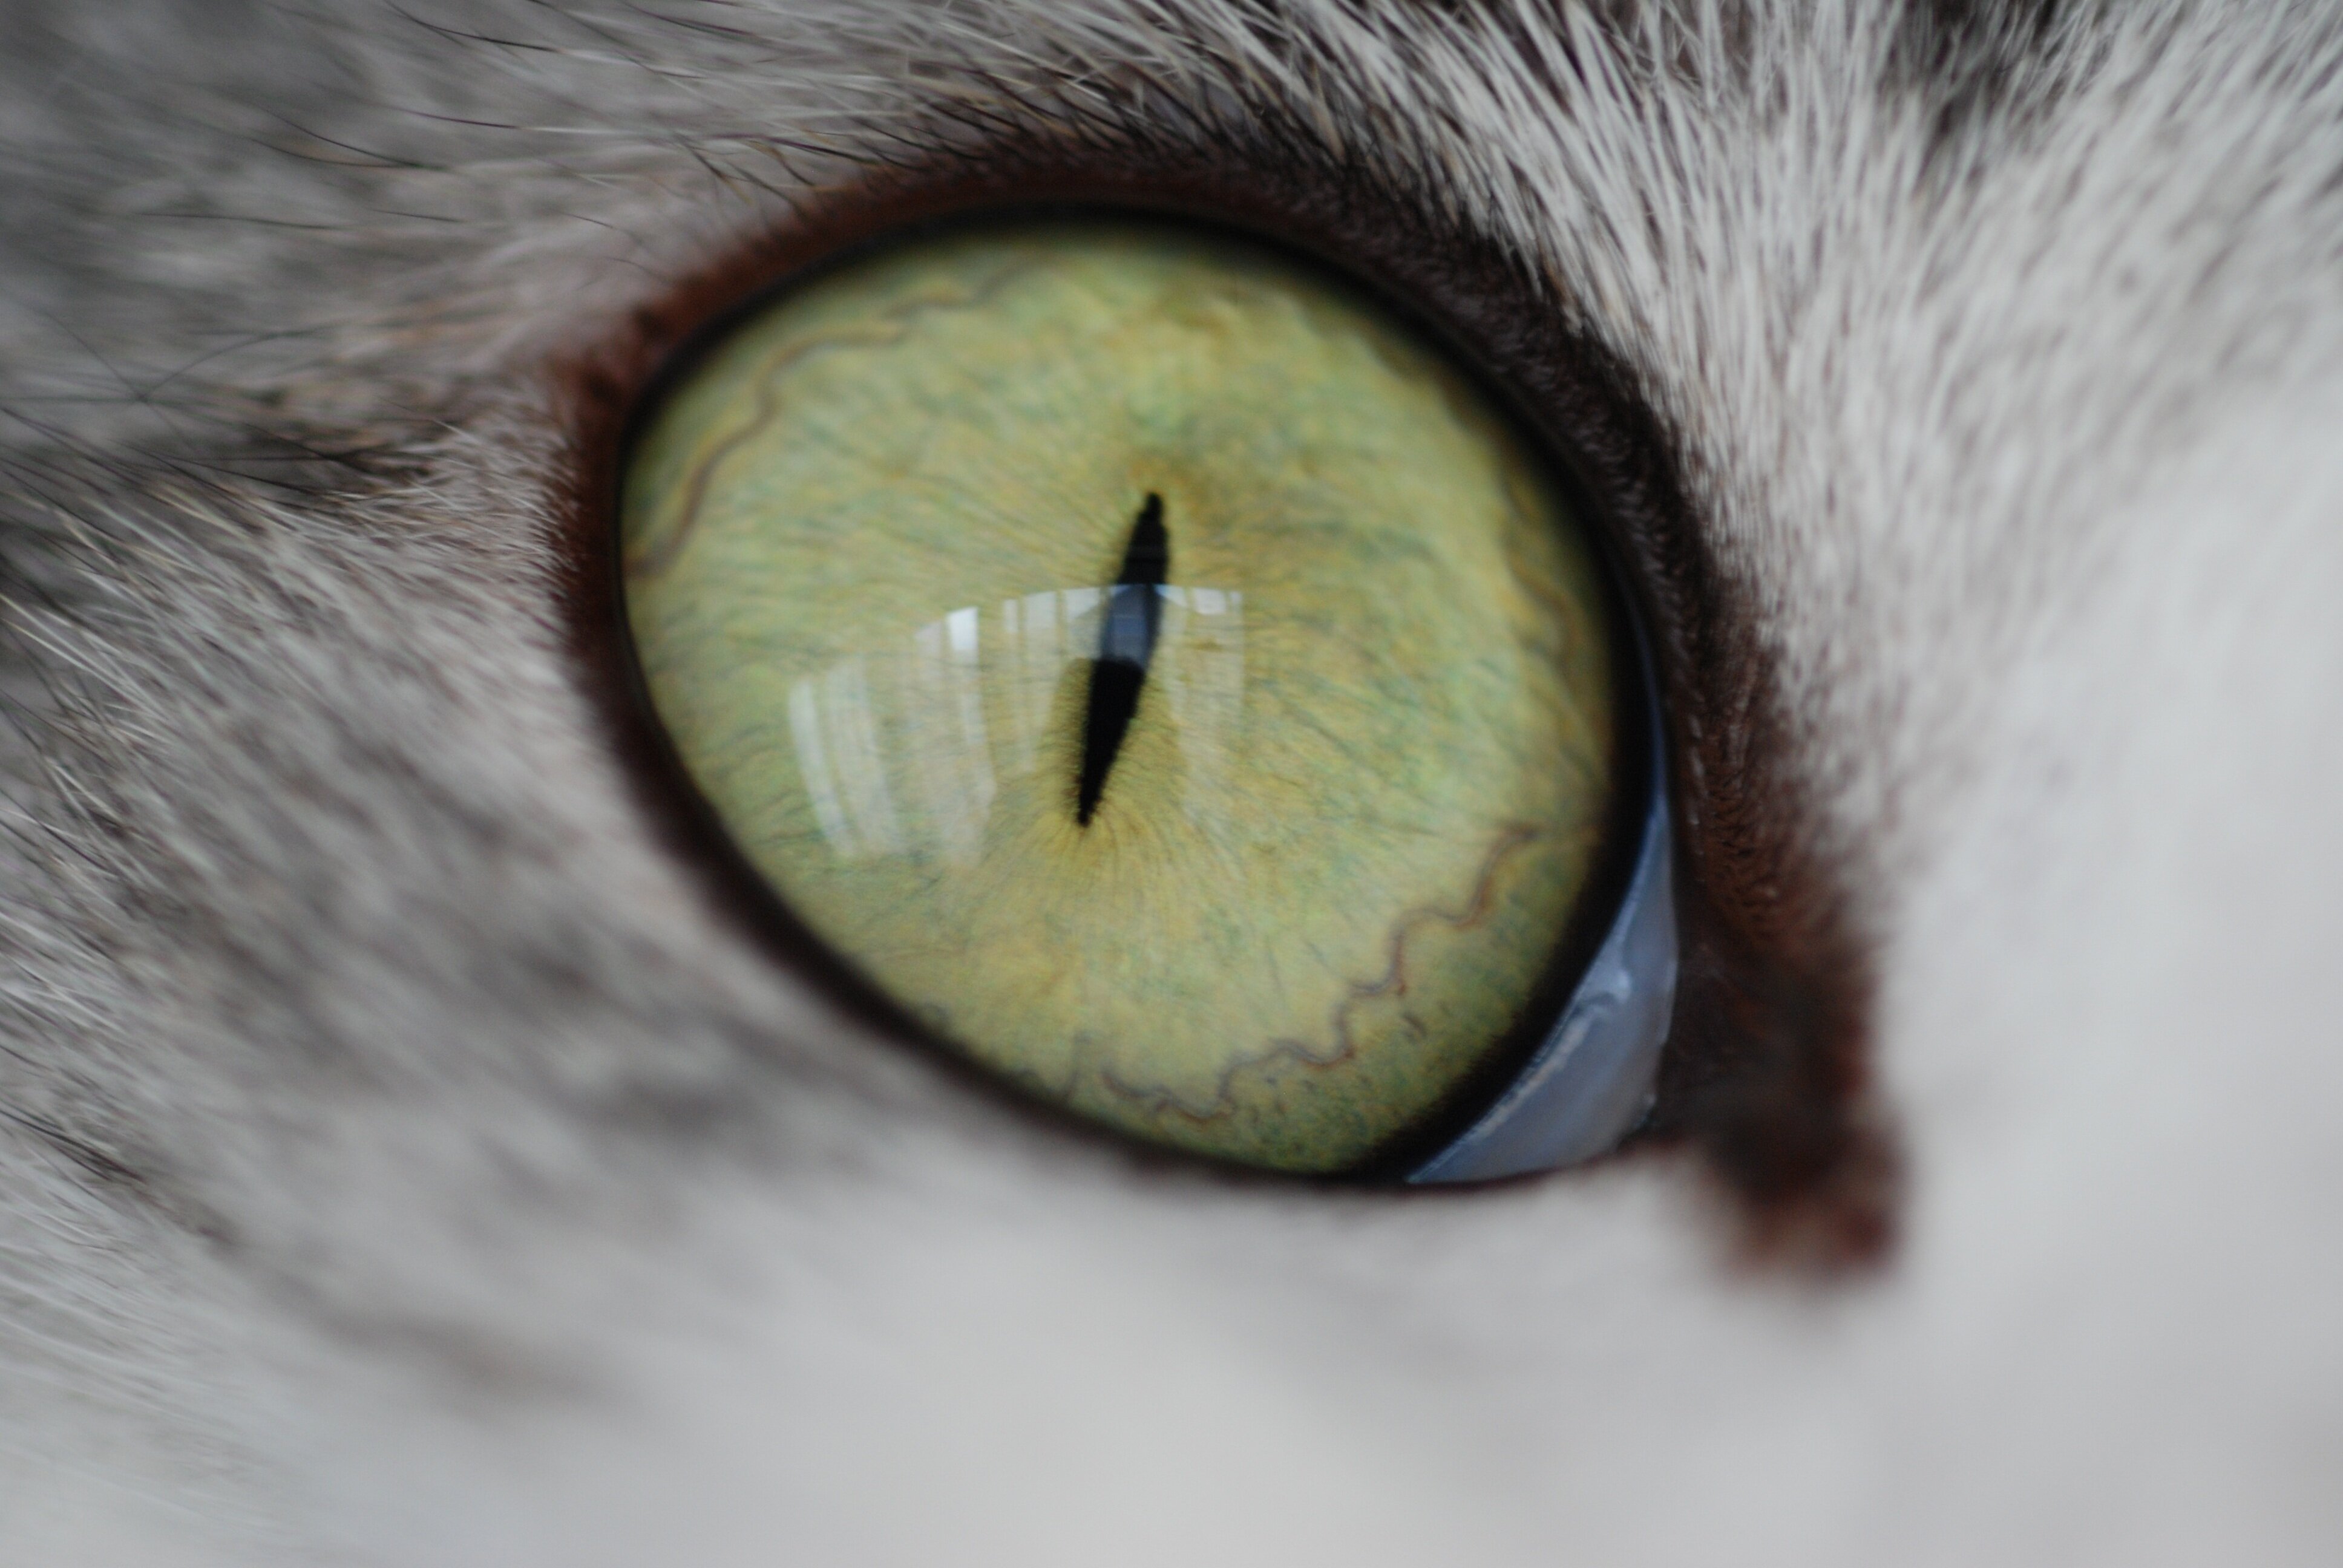 üçüncü göz kapağı görülen kedi gözü